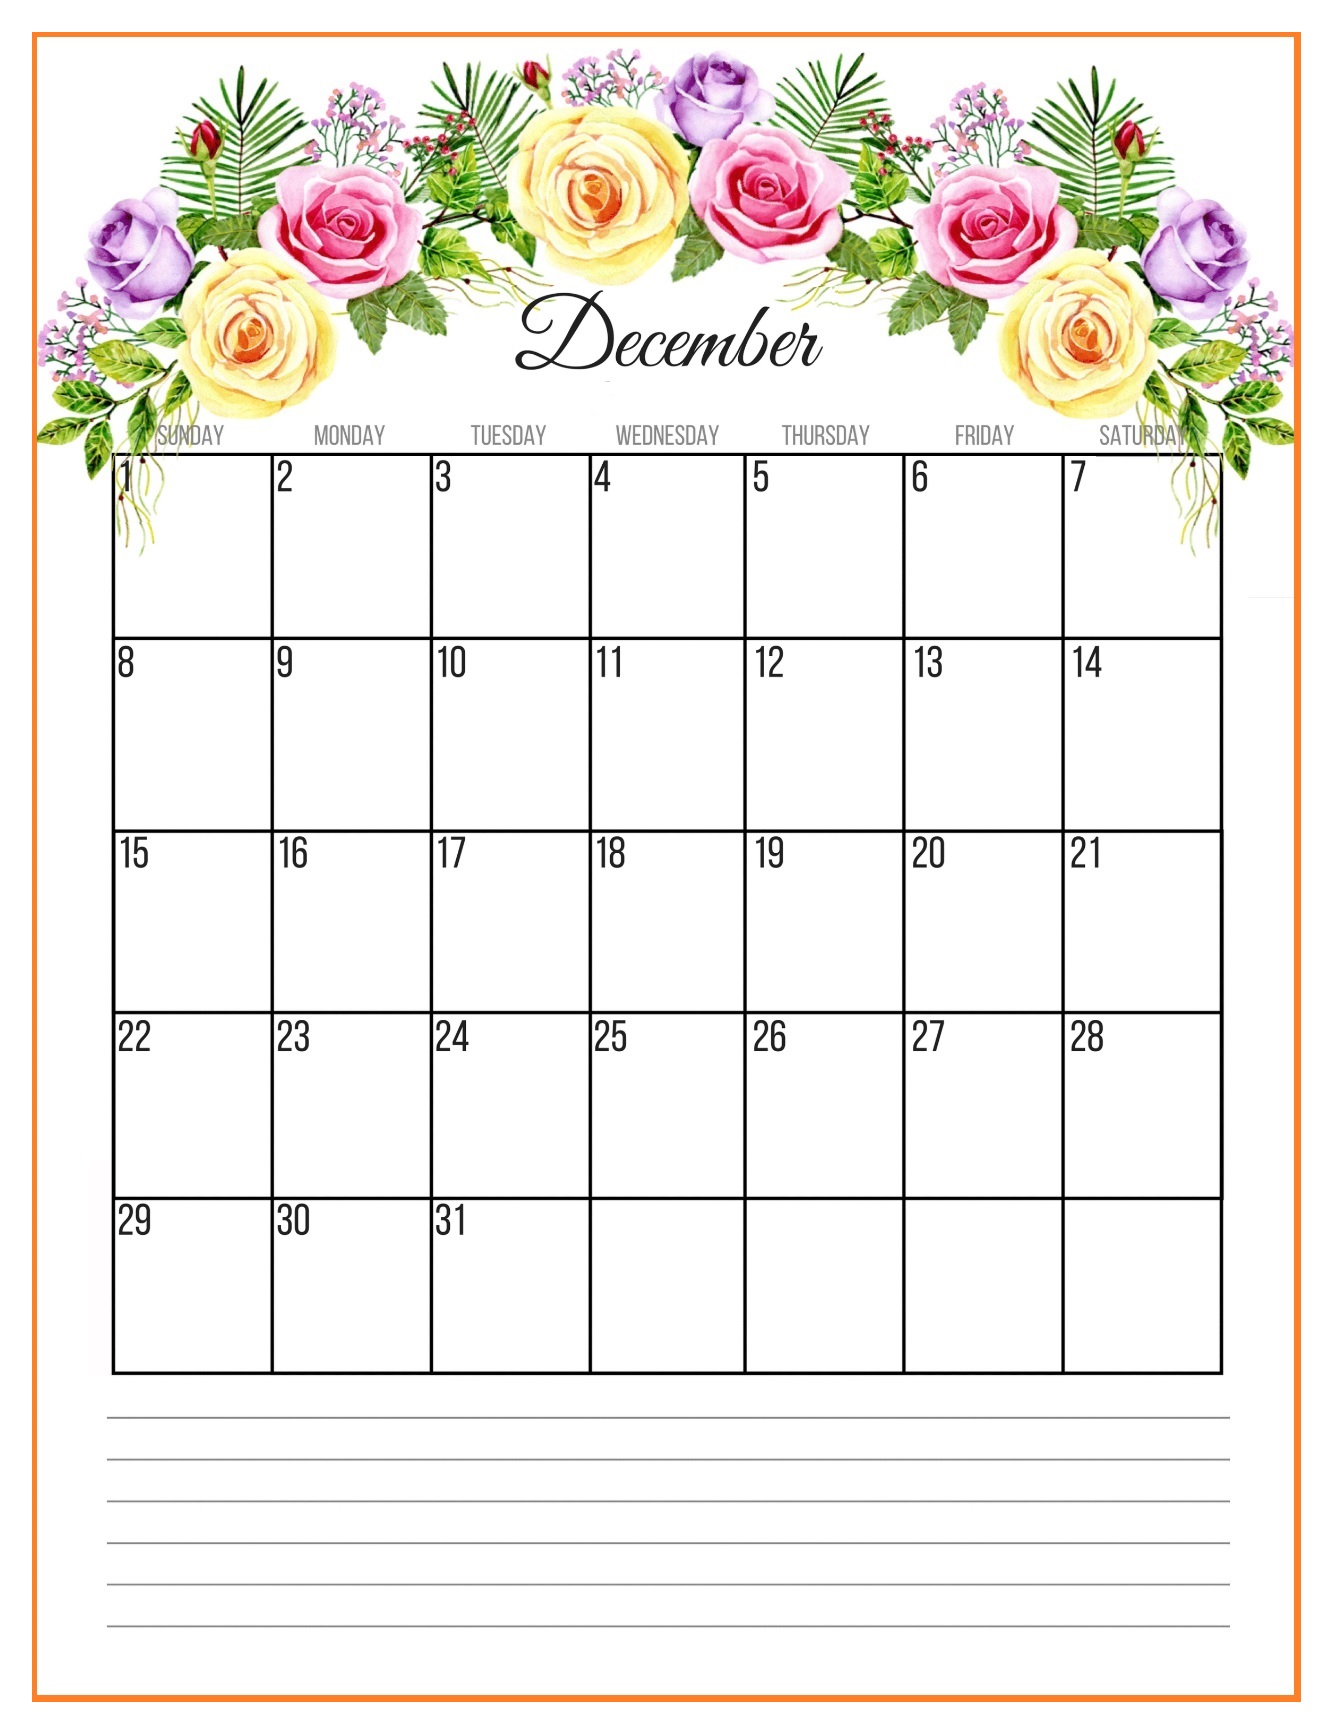 December 2019 Floral Wall Calendar